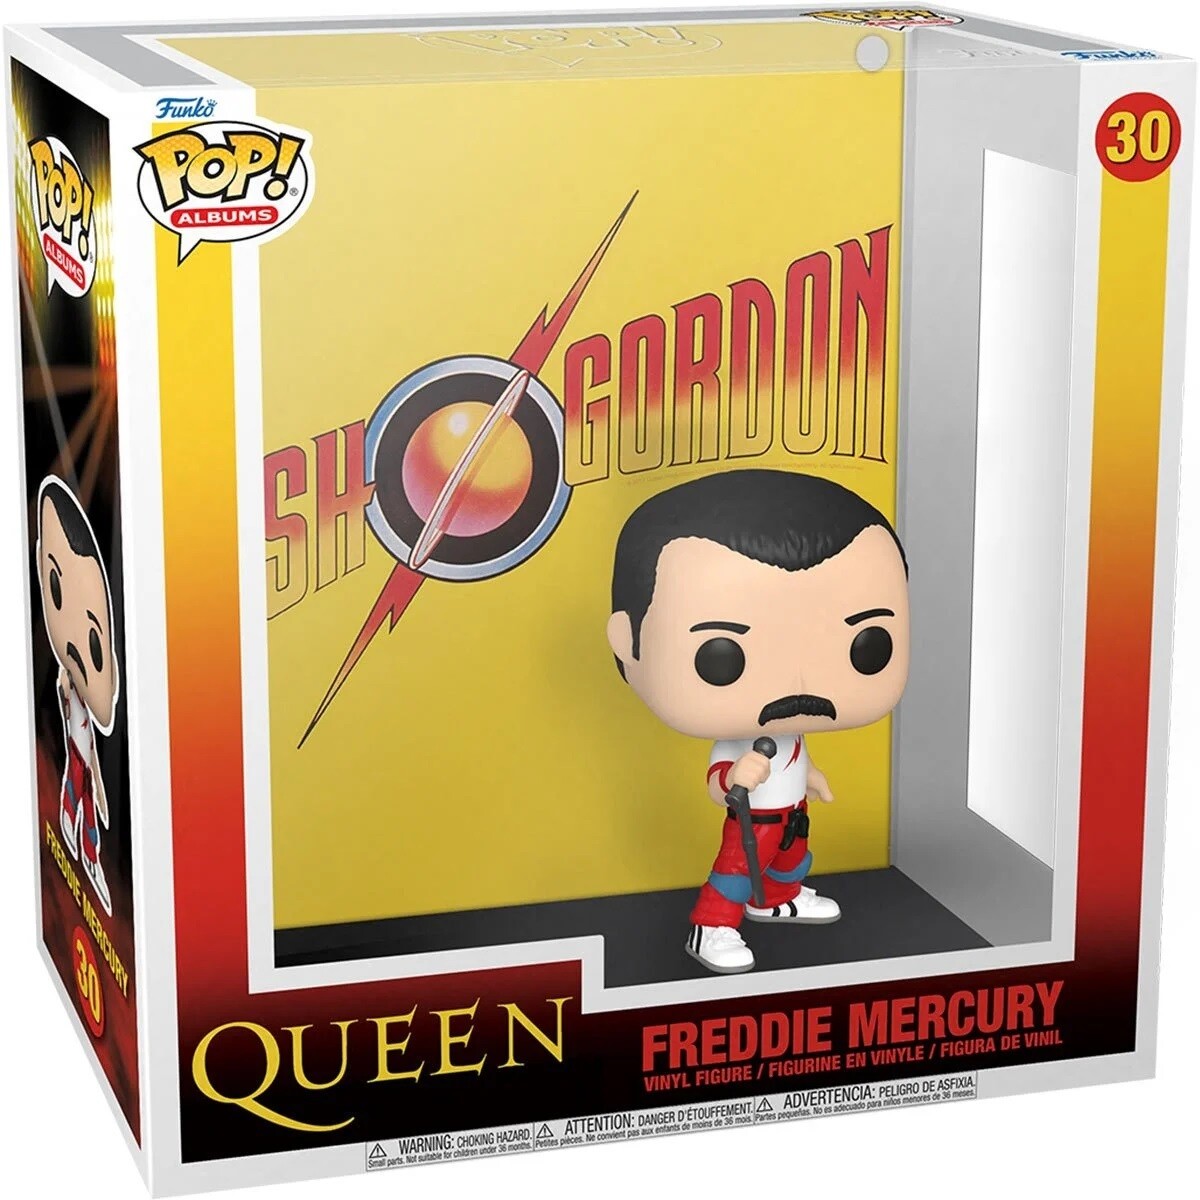 Queen "Flash Gordon" POP! Albums #30 Vinyl Figure